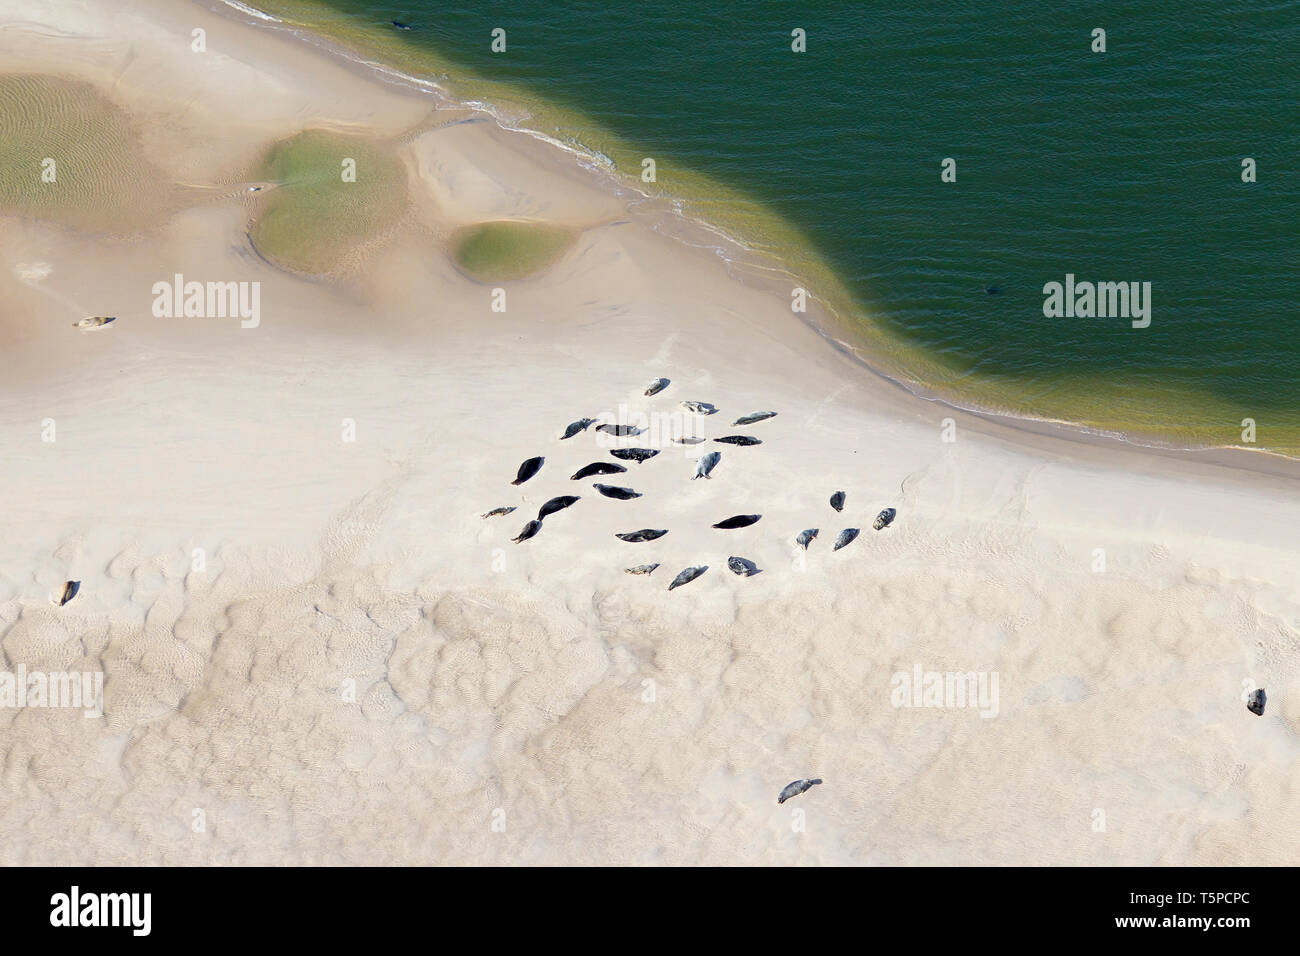 Vista aérea a través de la colonia de focas comunes (Phoca vitulina) y focas grises (Halichoerus grypus) apoyado en el arenal, el Parque Nacional del Mar de Wadden, Alemania Foto de stock